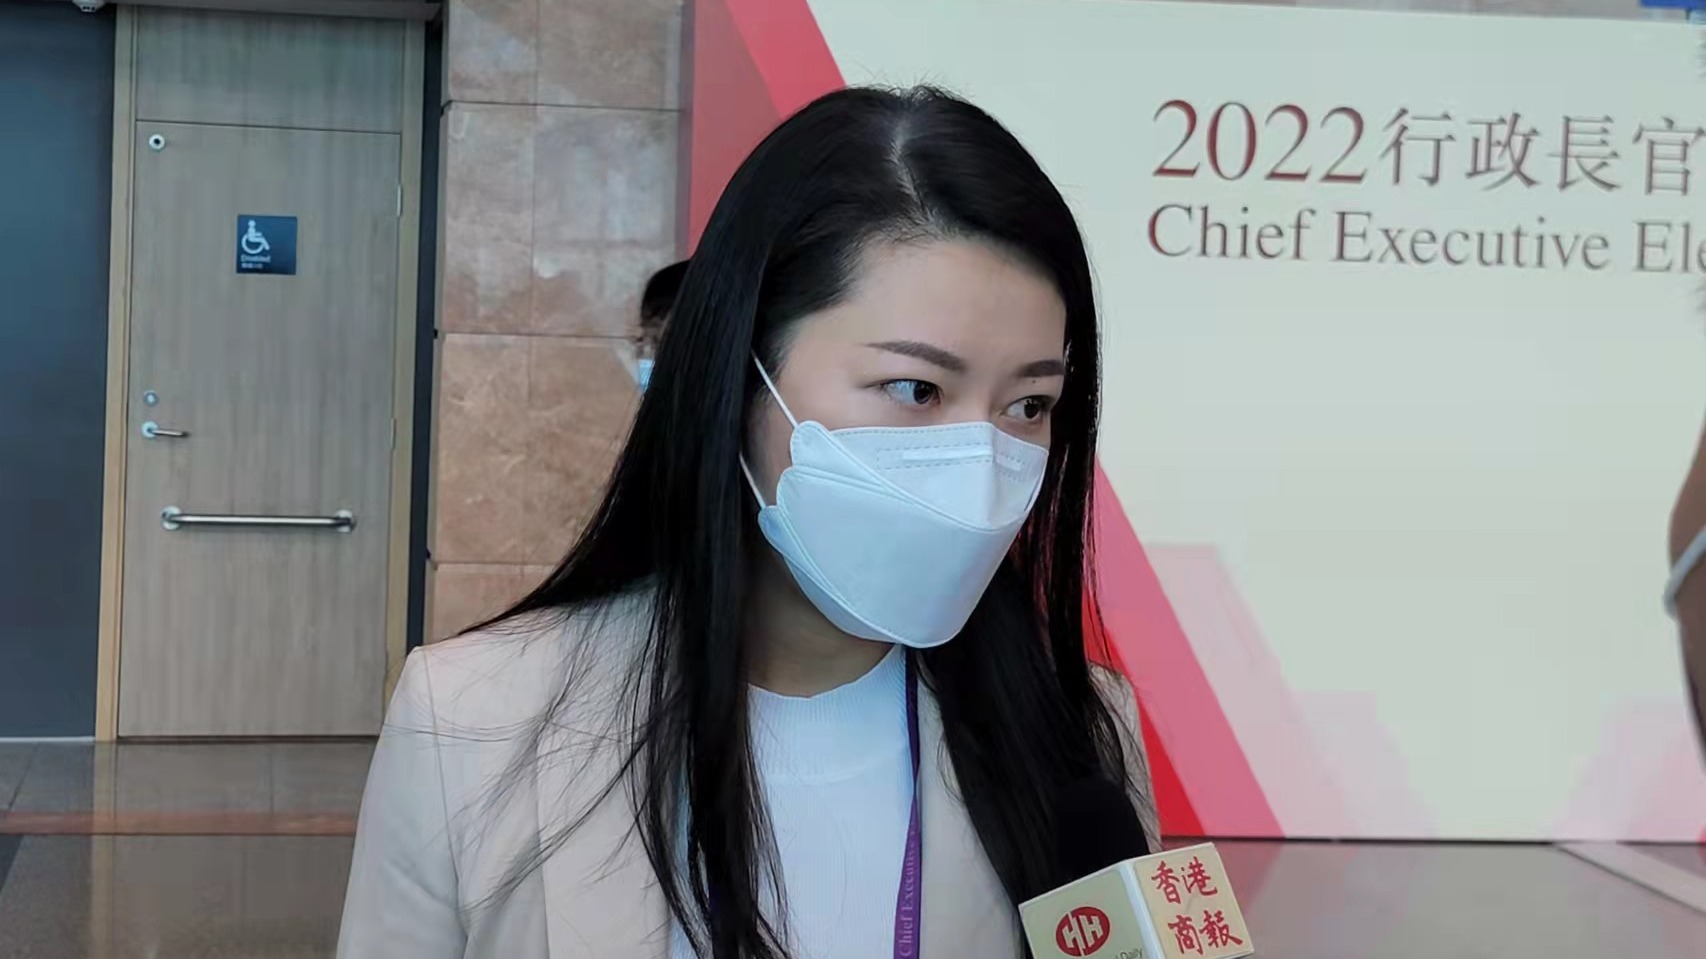 中醫界別選委李嘉欣表示，非常期待新任特首誕生，亦期望新特首能帶領香港有一個新的出發，開始新的篇章，在疫情期間仍能有新的氣象，發揮正能量，面對困難及挑戰。